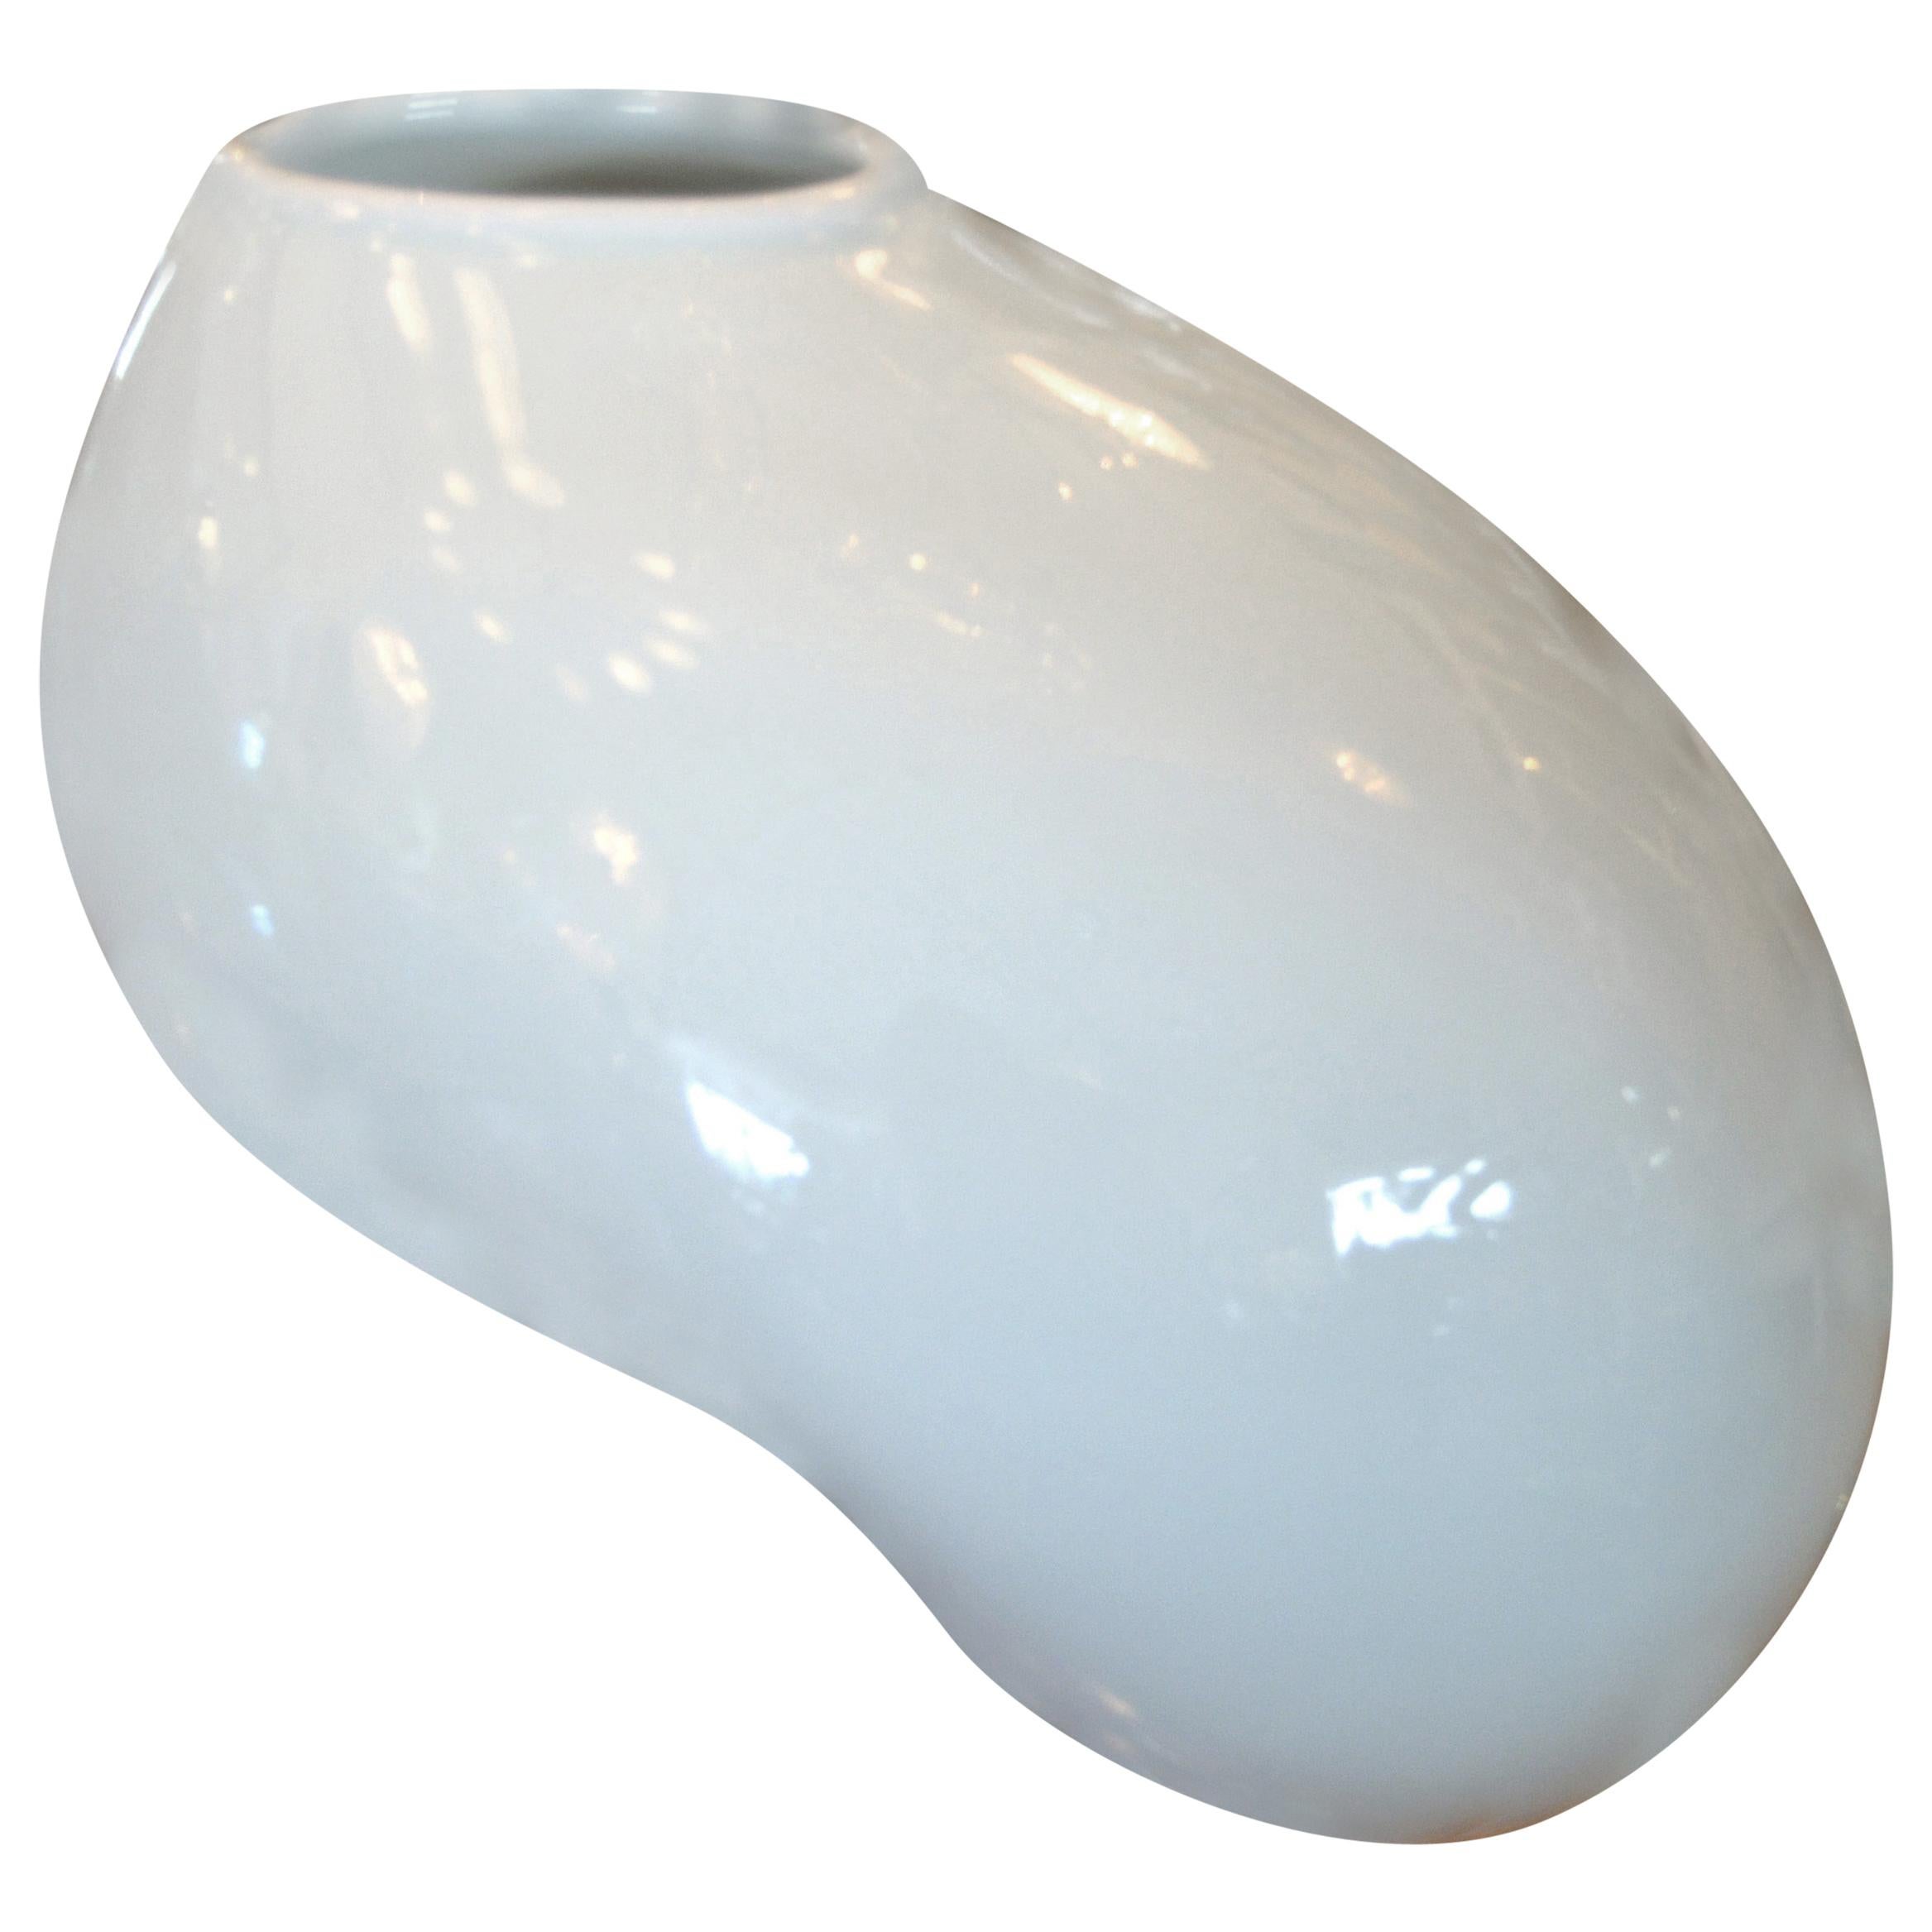 Organic Asian Modern White Ceramic Water Bag Vase Made by Spin Ceramics Shanghai